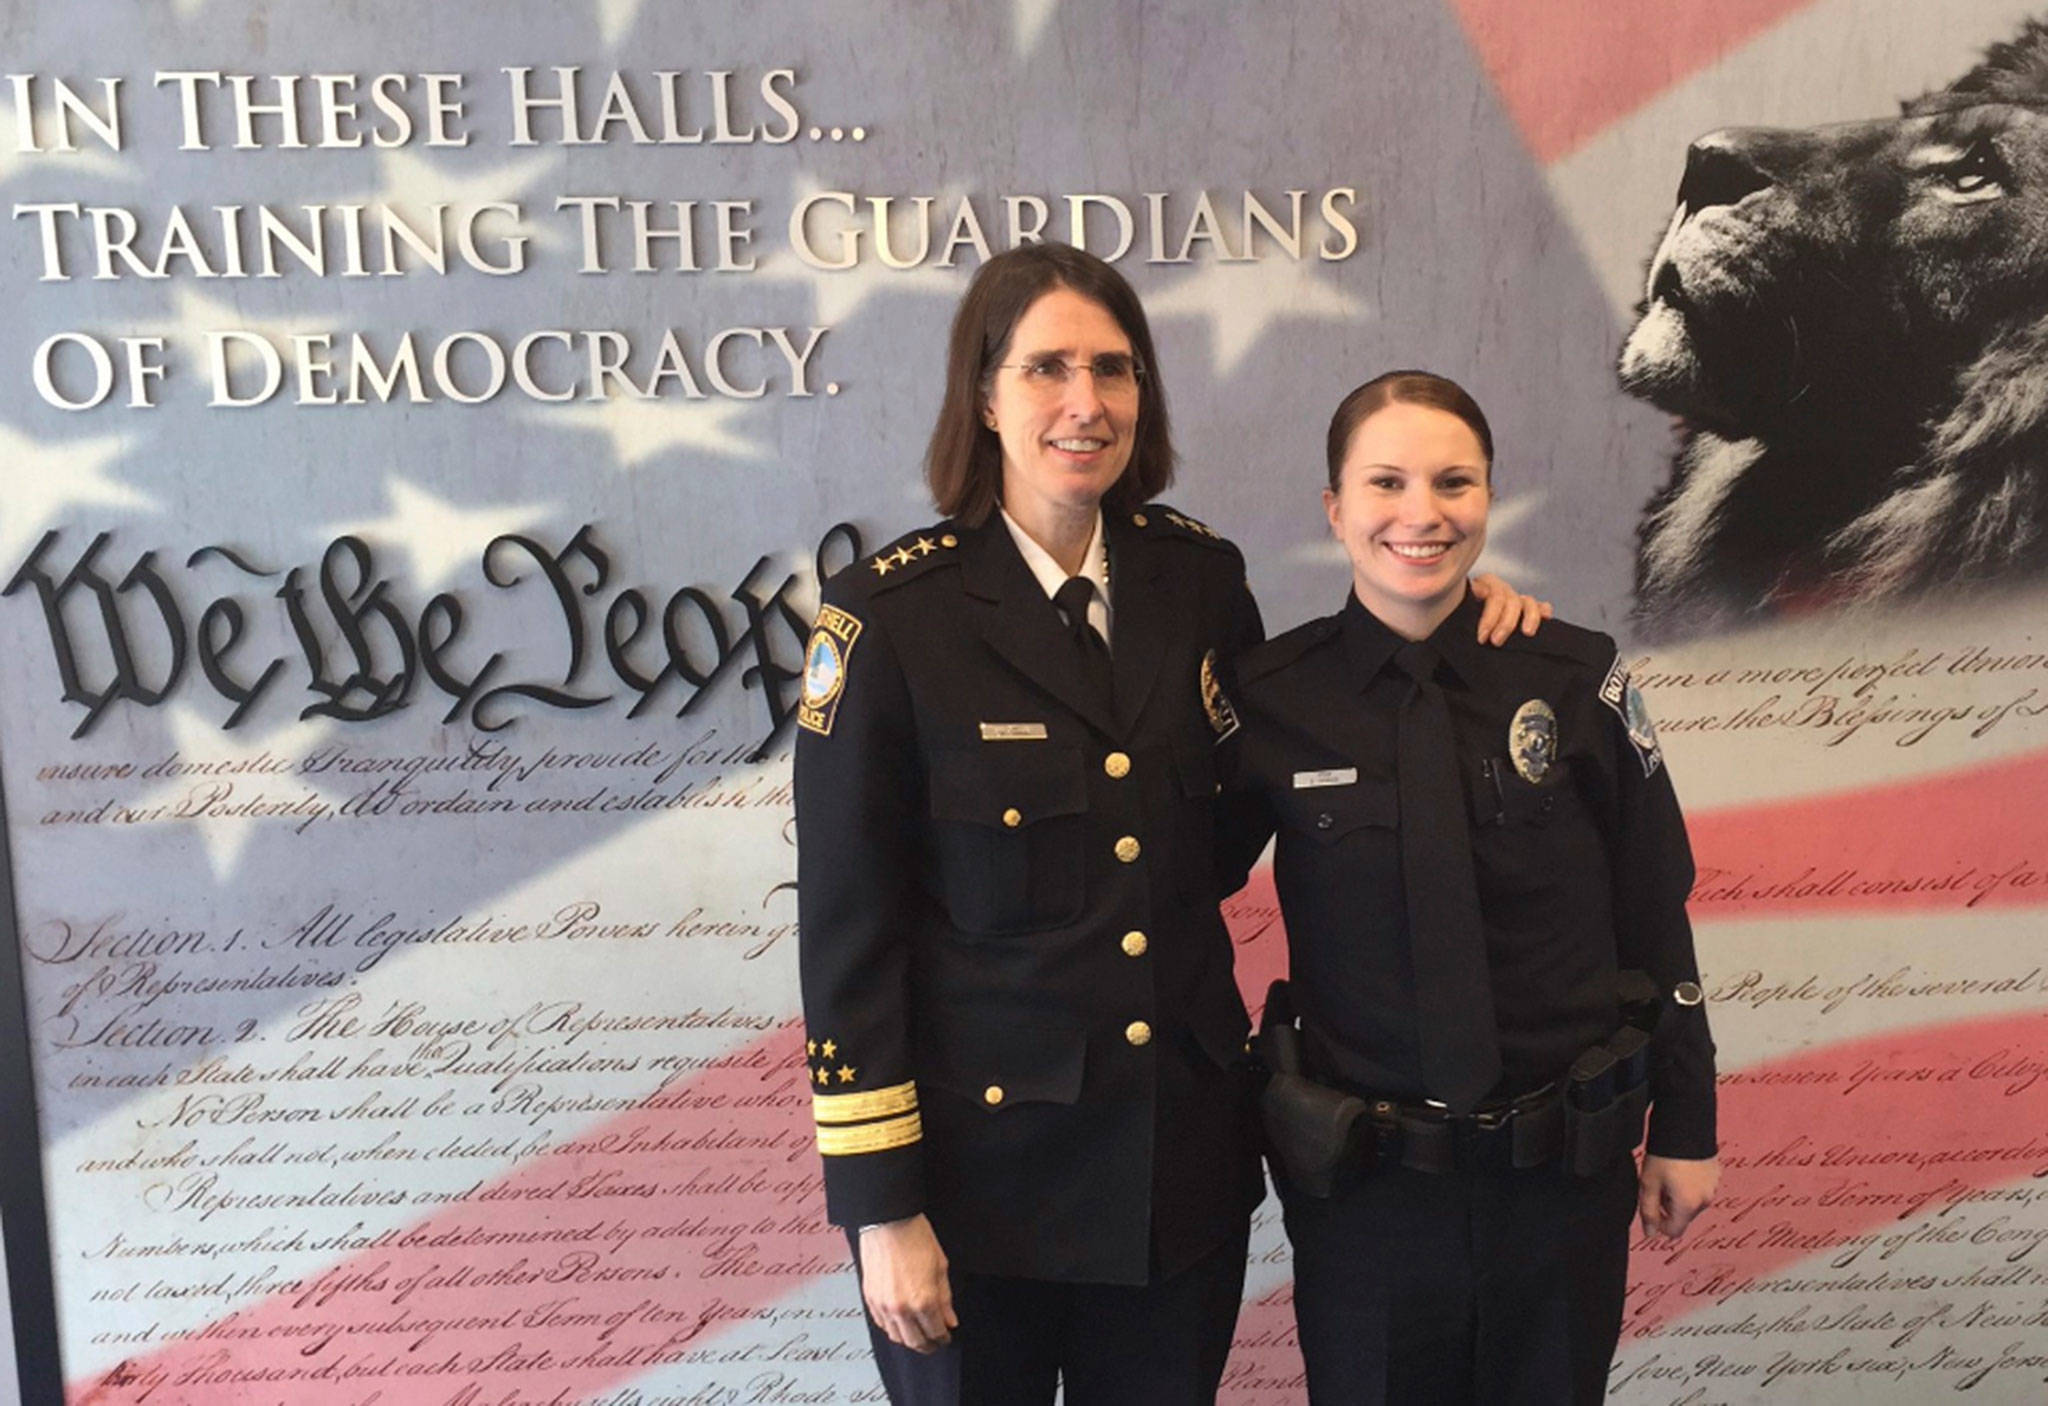 Women in law enforcement take the lead